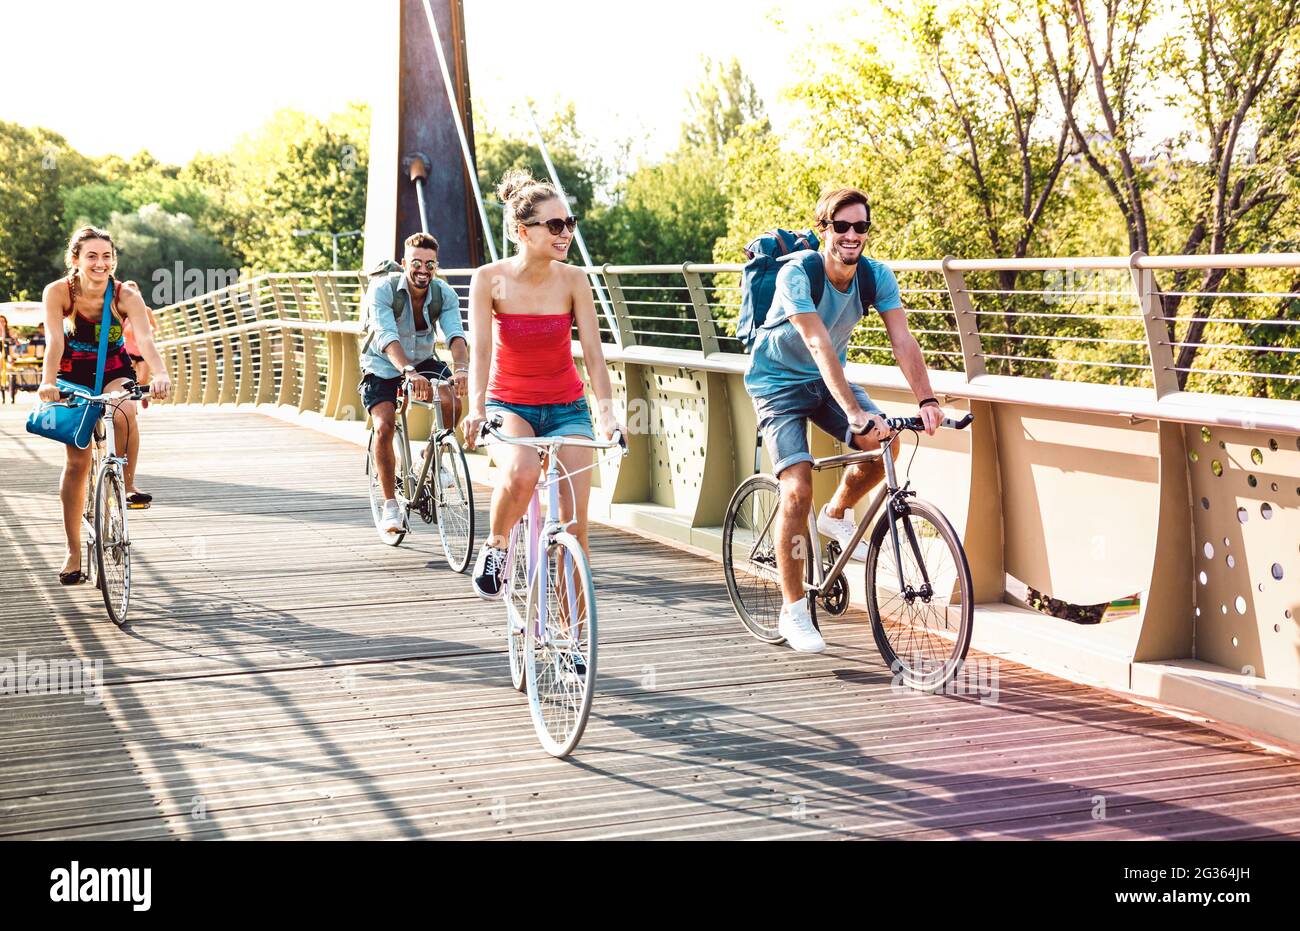 Amici felici e mileniali che si divertono in bicicletta al ponte del parco cittadino - concetto di stile di vita con i giovani studenti dell'hipster che pedalano insieme sulla pista ciclabile Foto Stock